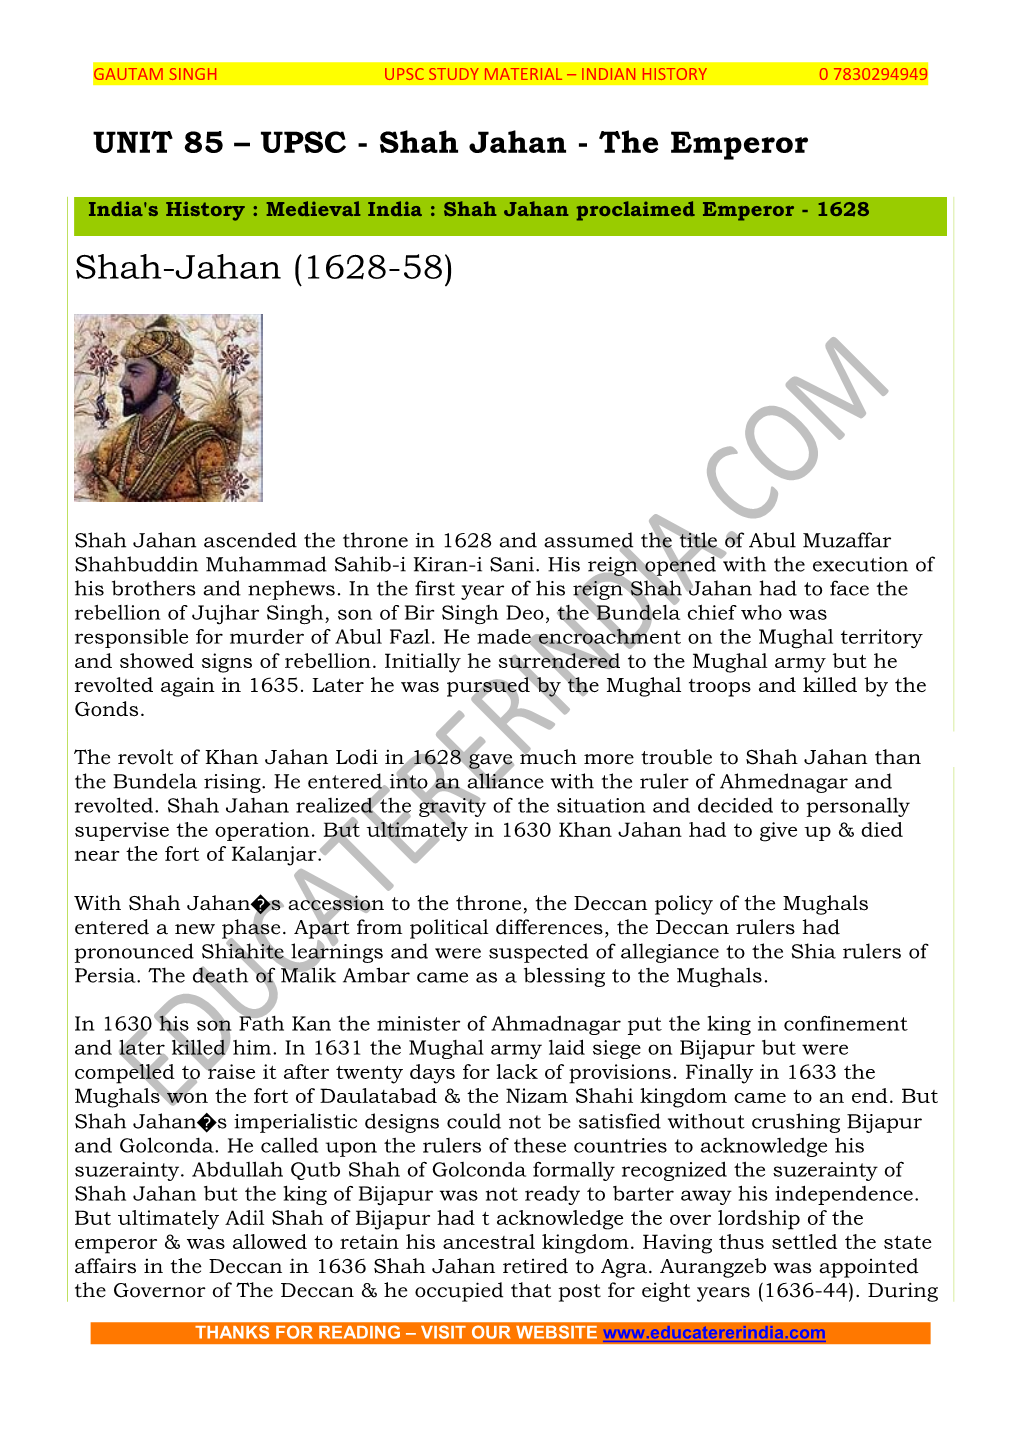 Shah-Jahan (1628-58)